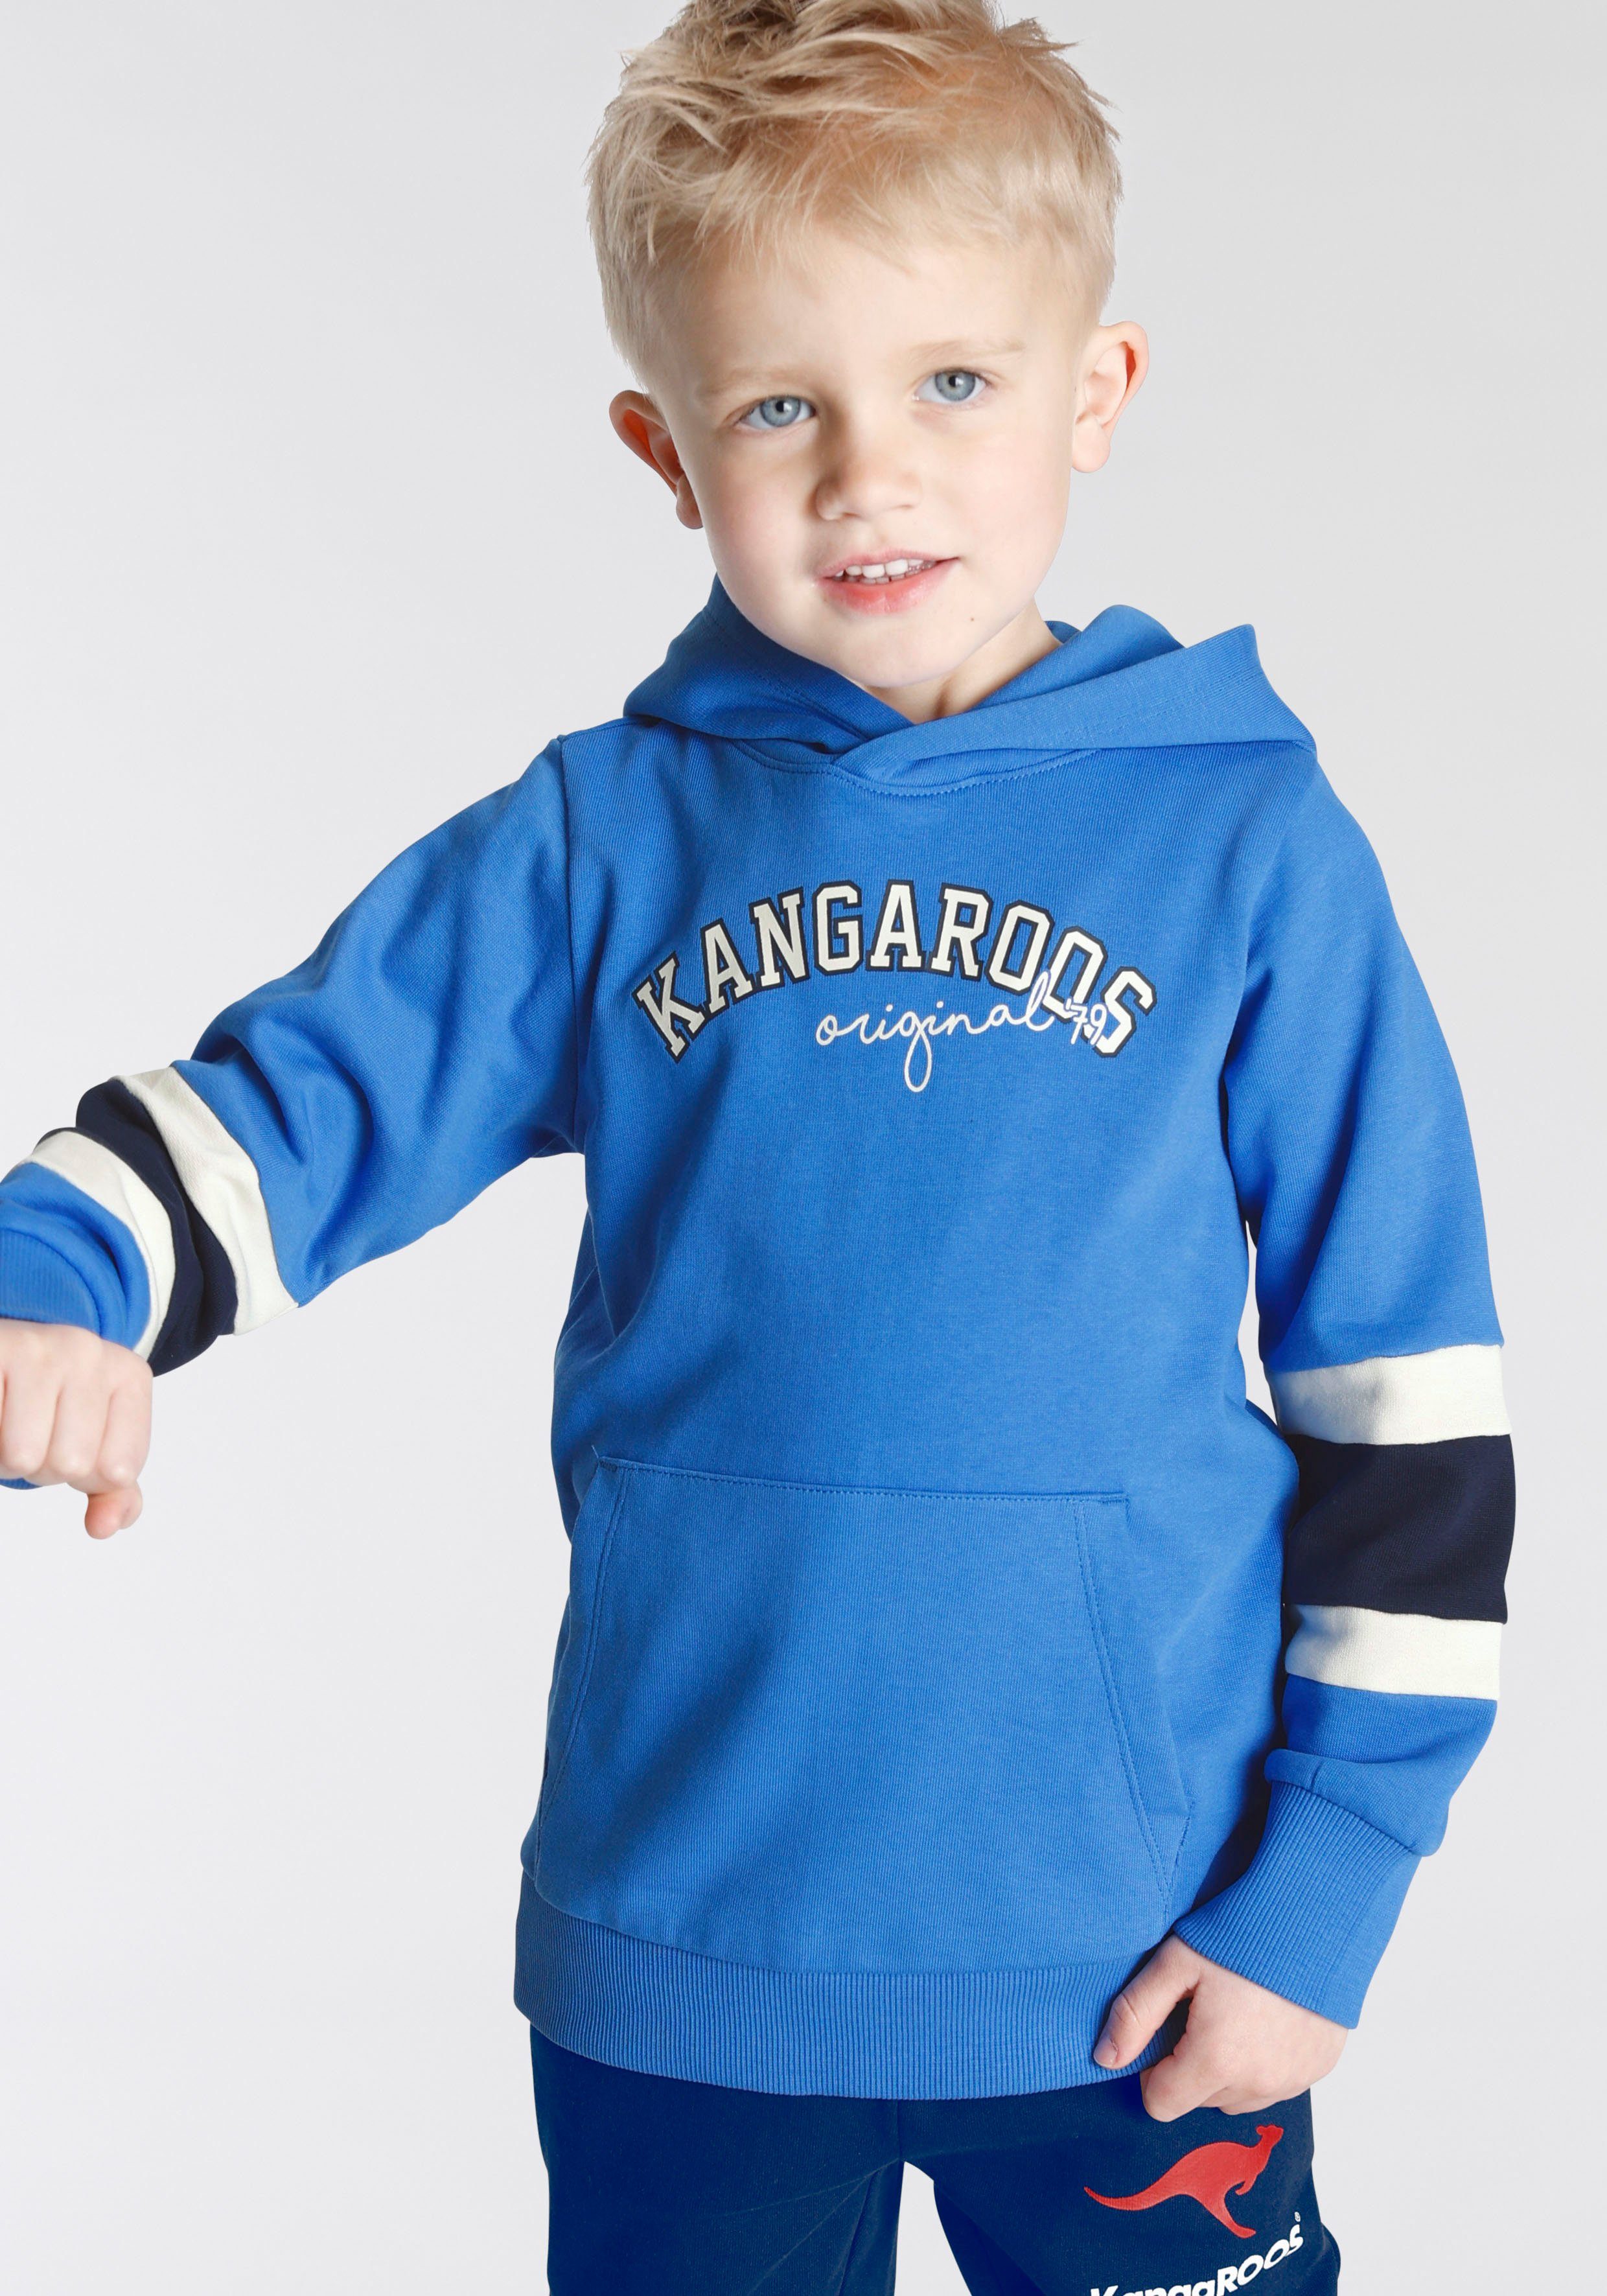 den für an KangaROOS Jungen Colorblocking, Ärmeln, Streifen mit Mini Kapuzensweatshirt